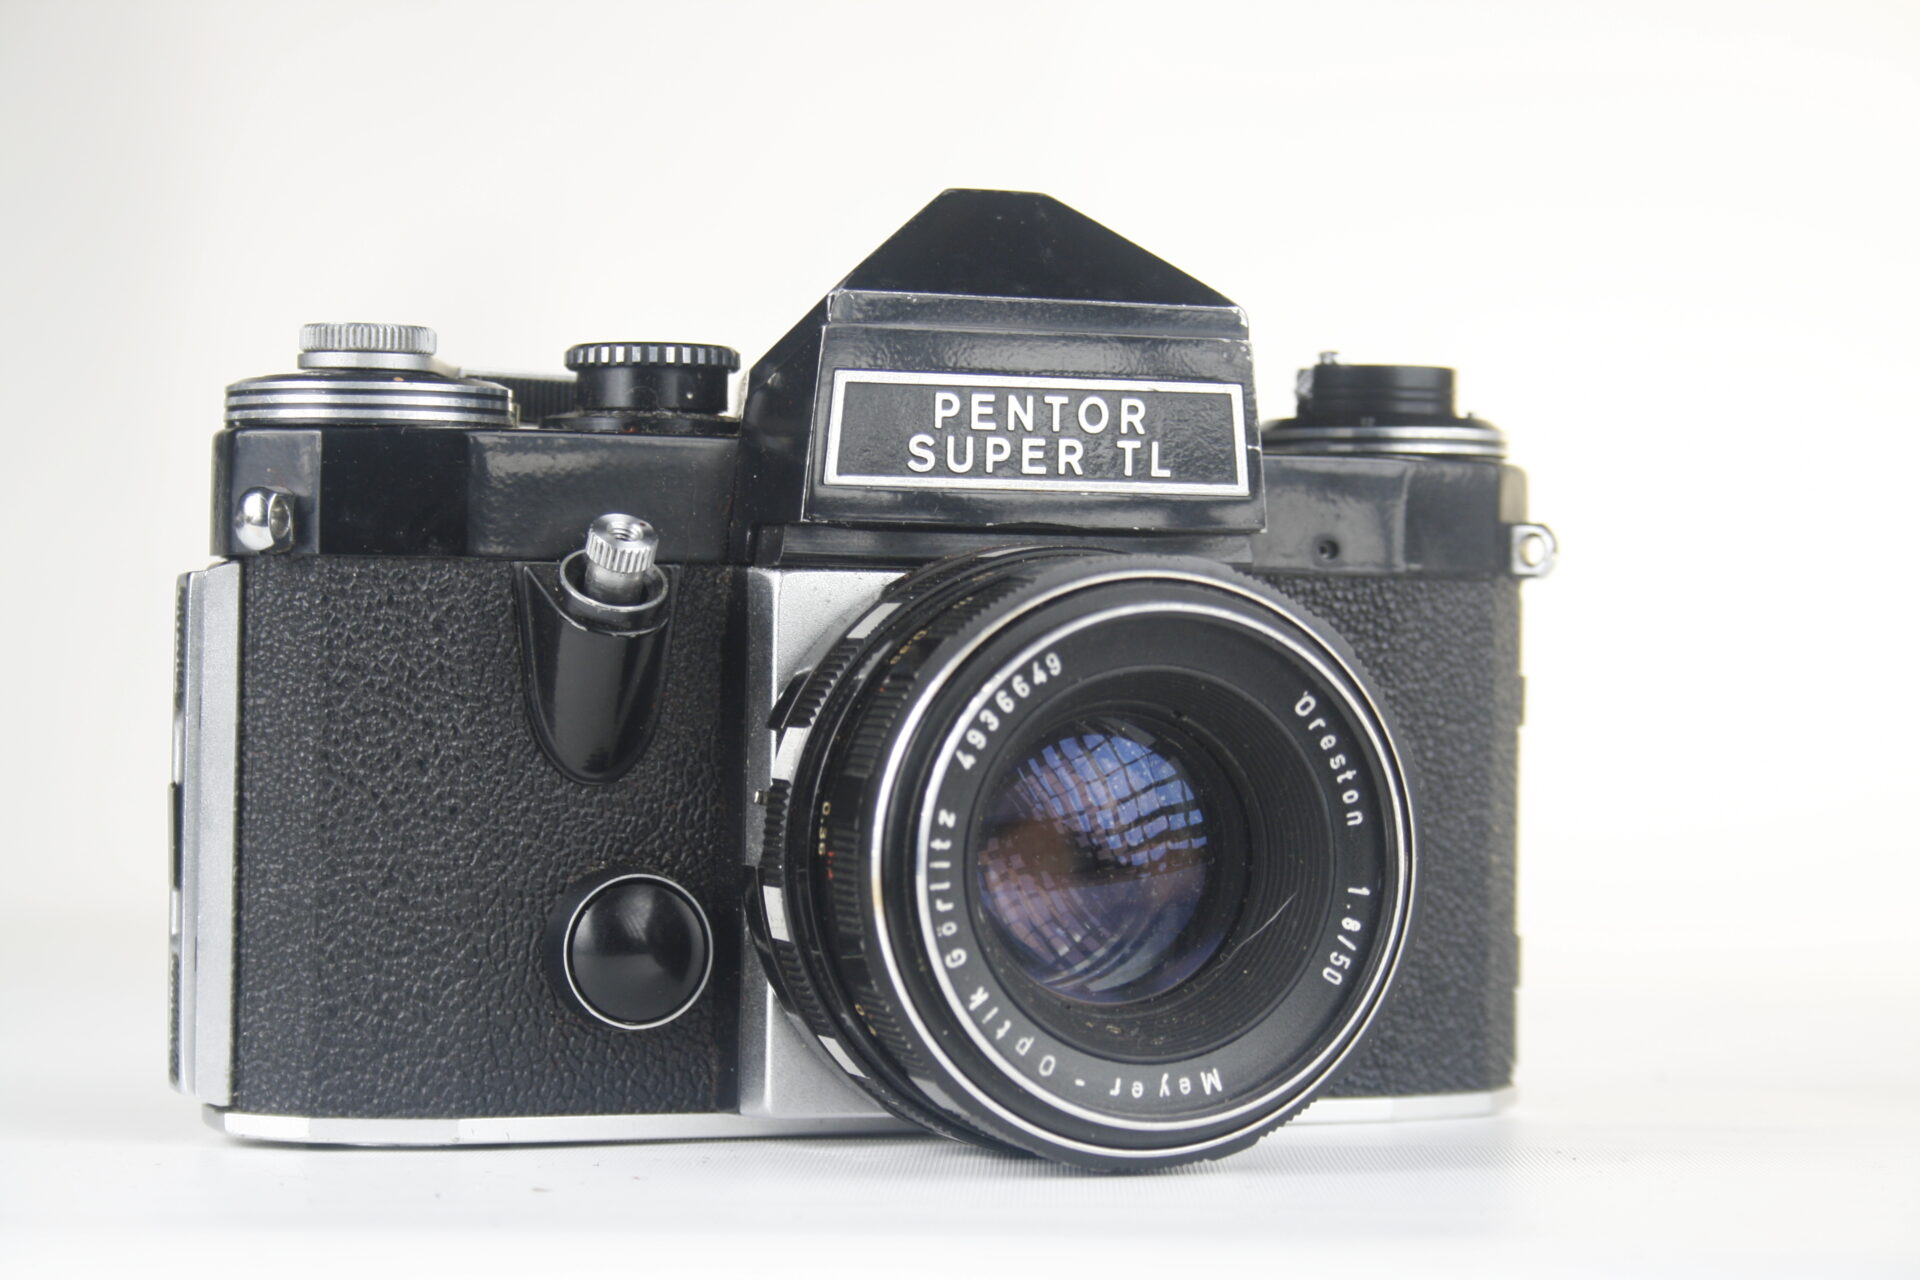 Praktica (Pentor Super TL speciale Nederlandse versie) 35mm SLR camera. 1968-1976. Japan.